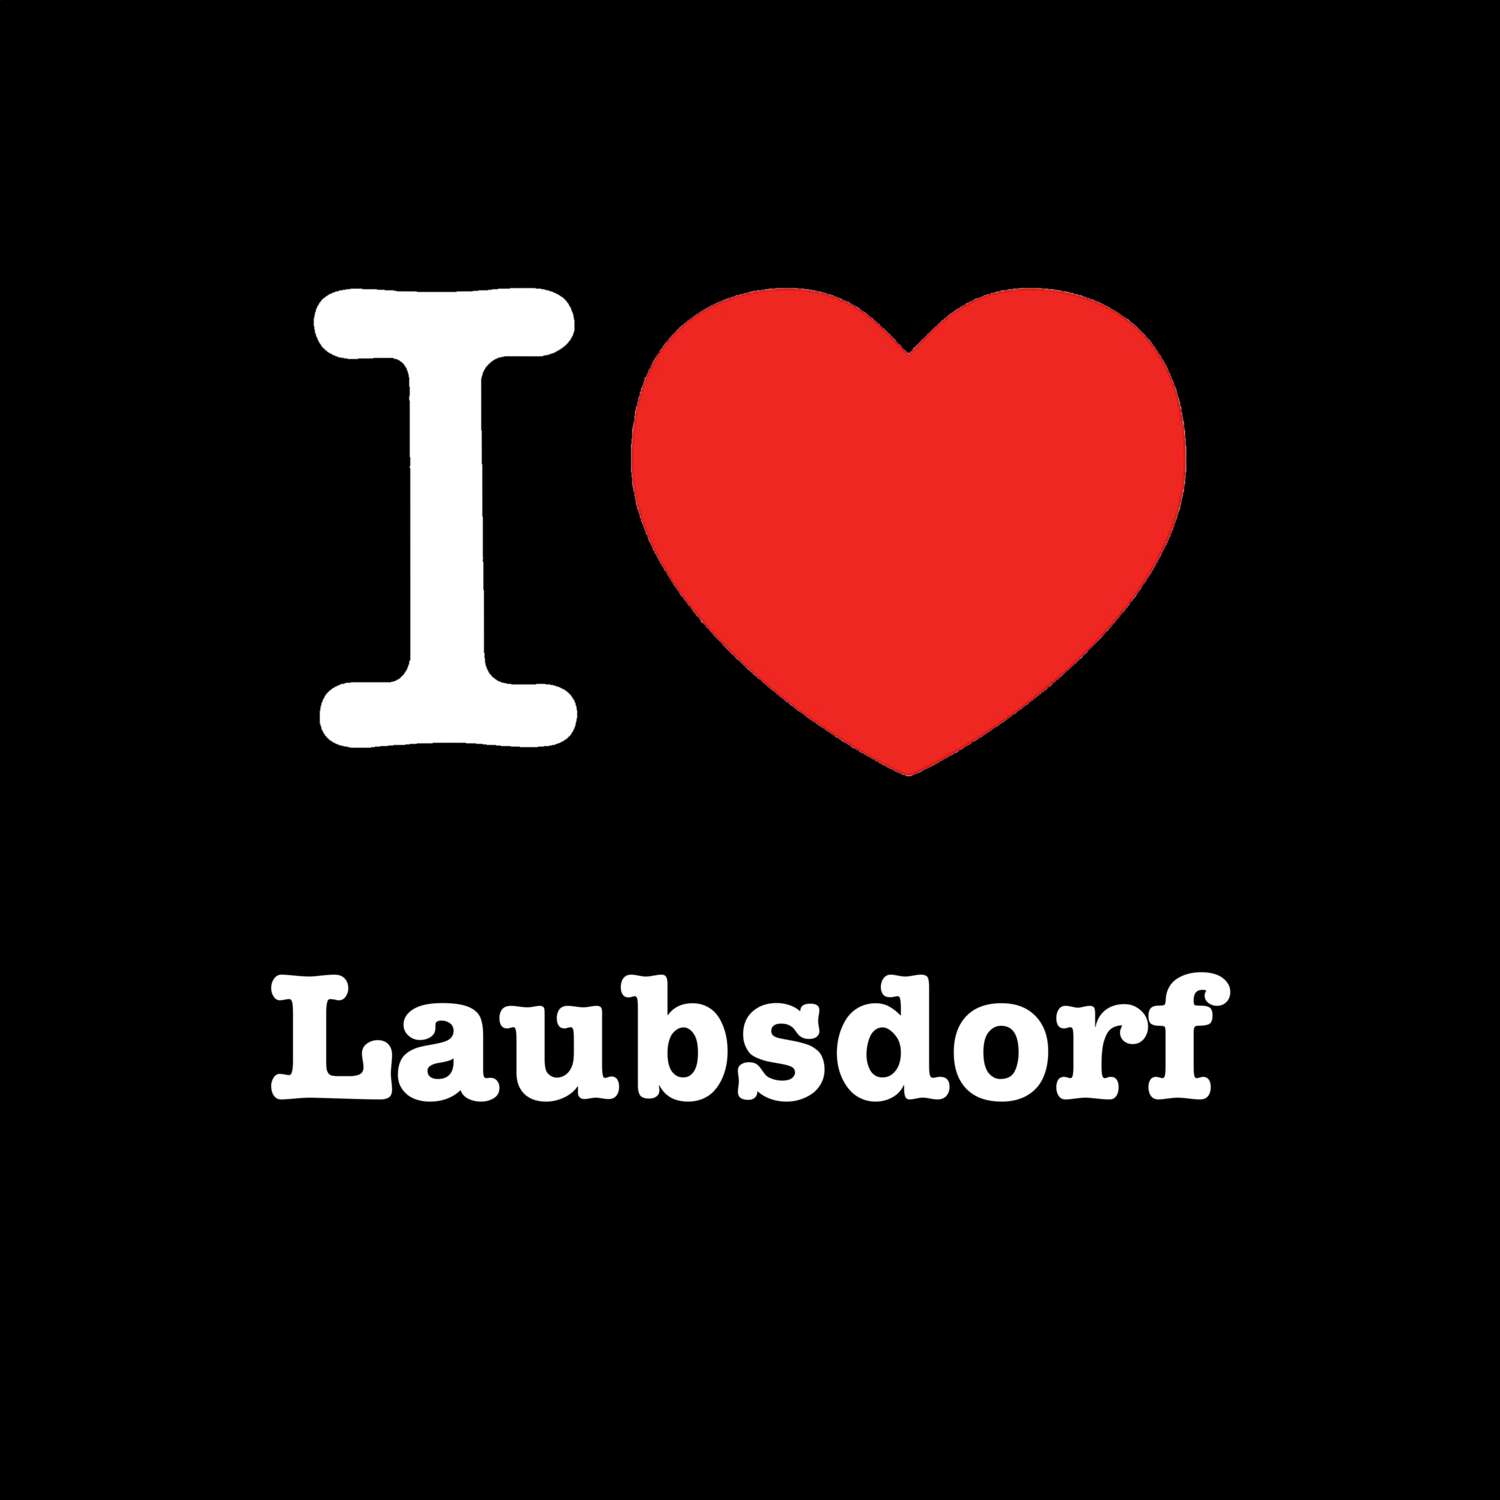 Laubsdorf T-Shirt »I love«